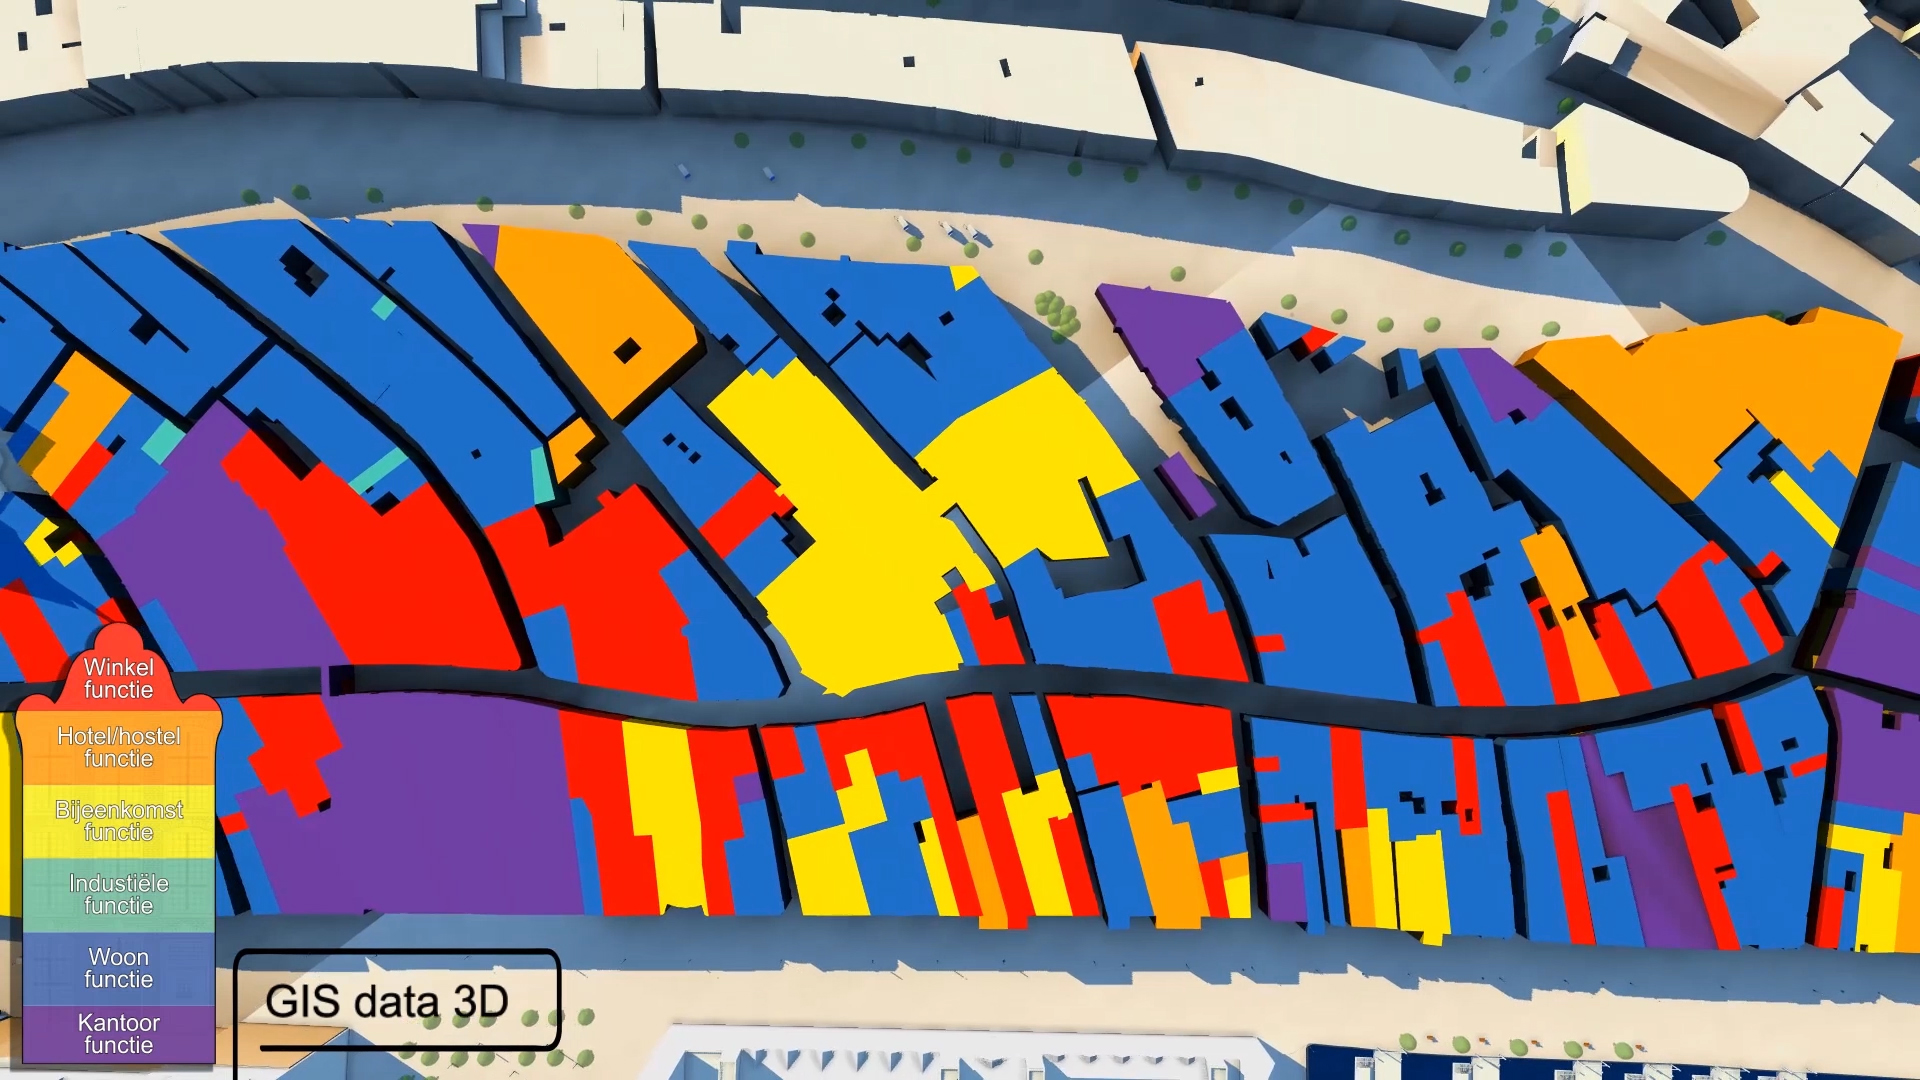 Bestemmingsplan gecategoriseerd op kleur, de Dam. 